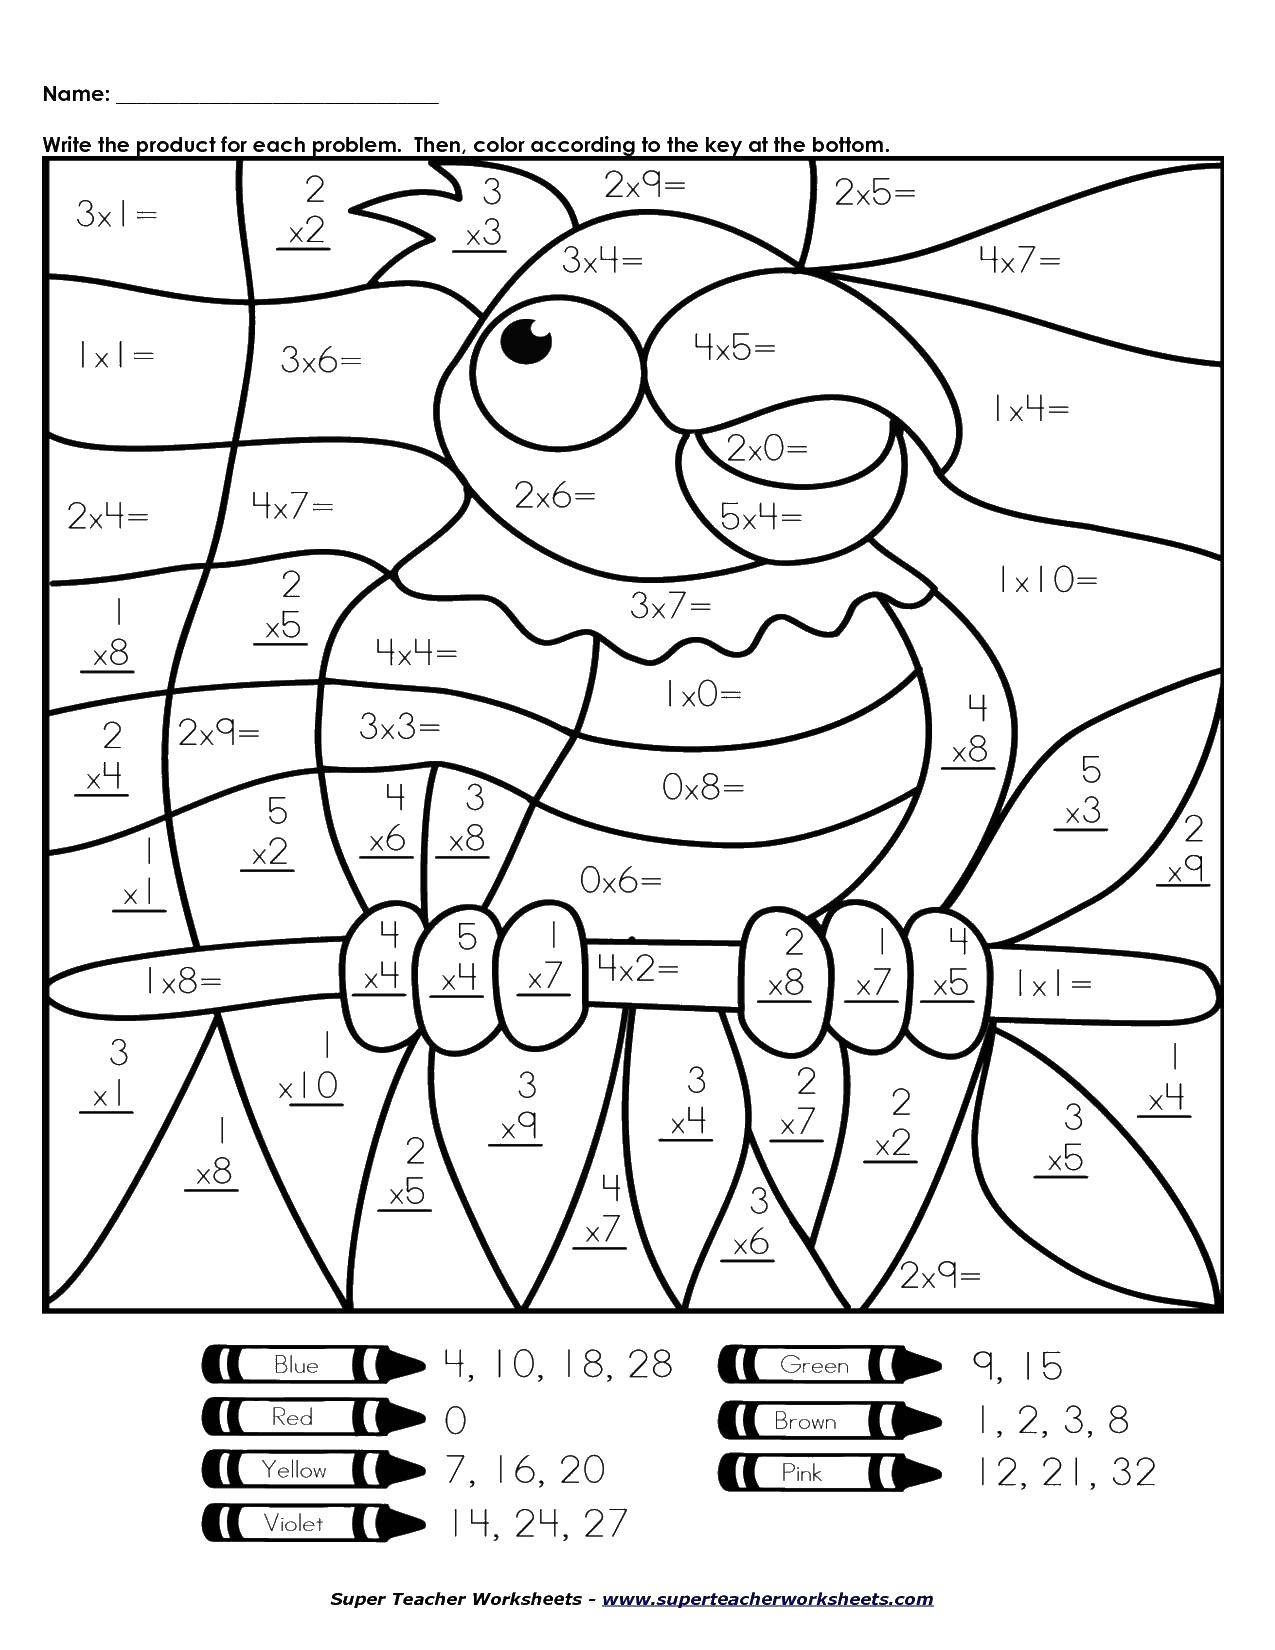 Название: Раскраска Раскрась попугая решив примеры. Категория: математические раскраски. Теги: примеры, математика, попугай.